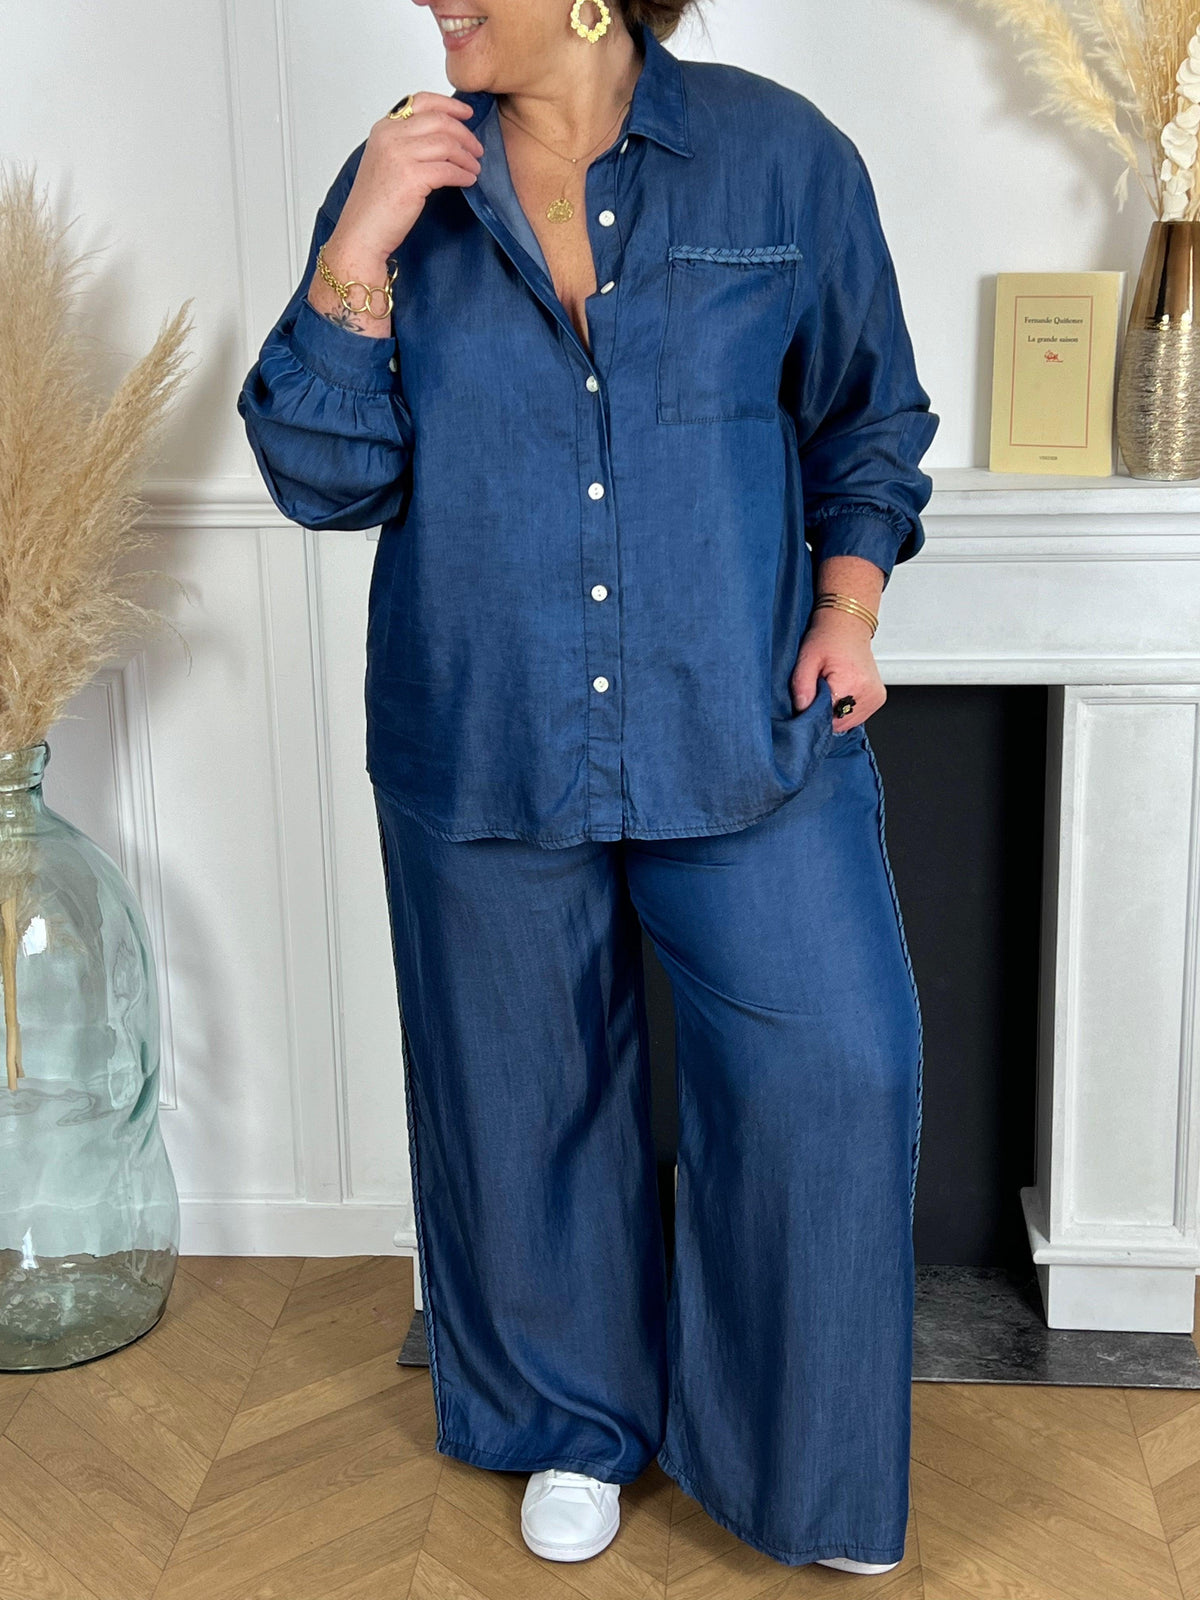 Découvrez notre chemise bleue Curve : Calie ! Son design unique avec des détails tressés ajoutent une touche d'originalité à votre tenue. Son tissu de qualité garantit un confort optimal toute la journée. Parfait pour une tenue décontractée ou habillée.